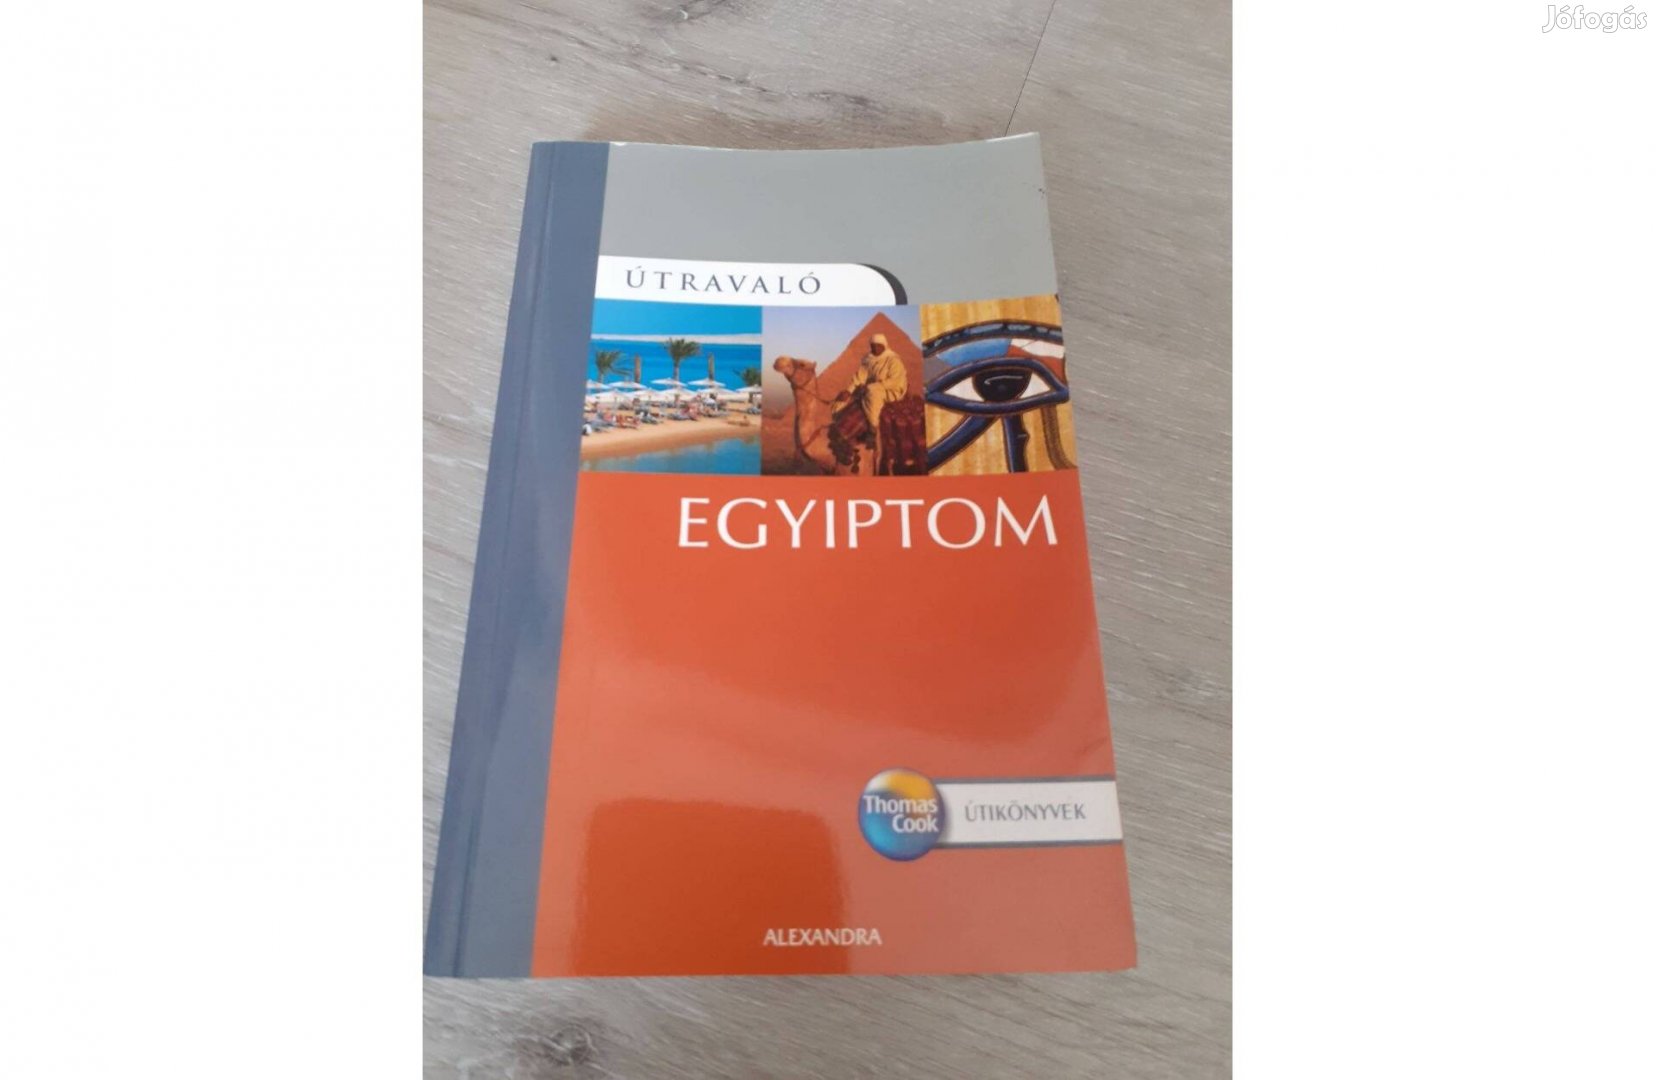 Egyiptom - Útravaló (Alexandra) c. útikönyv eladó